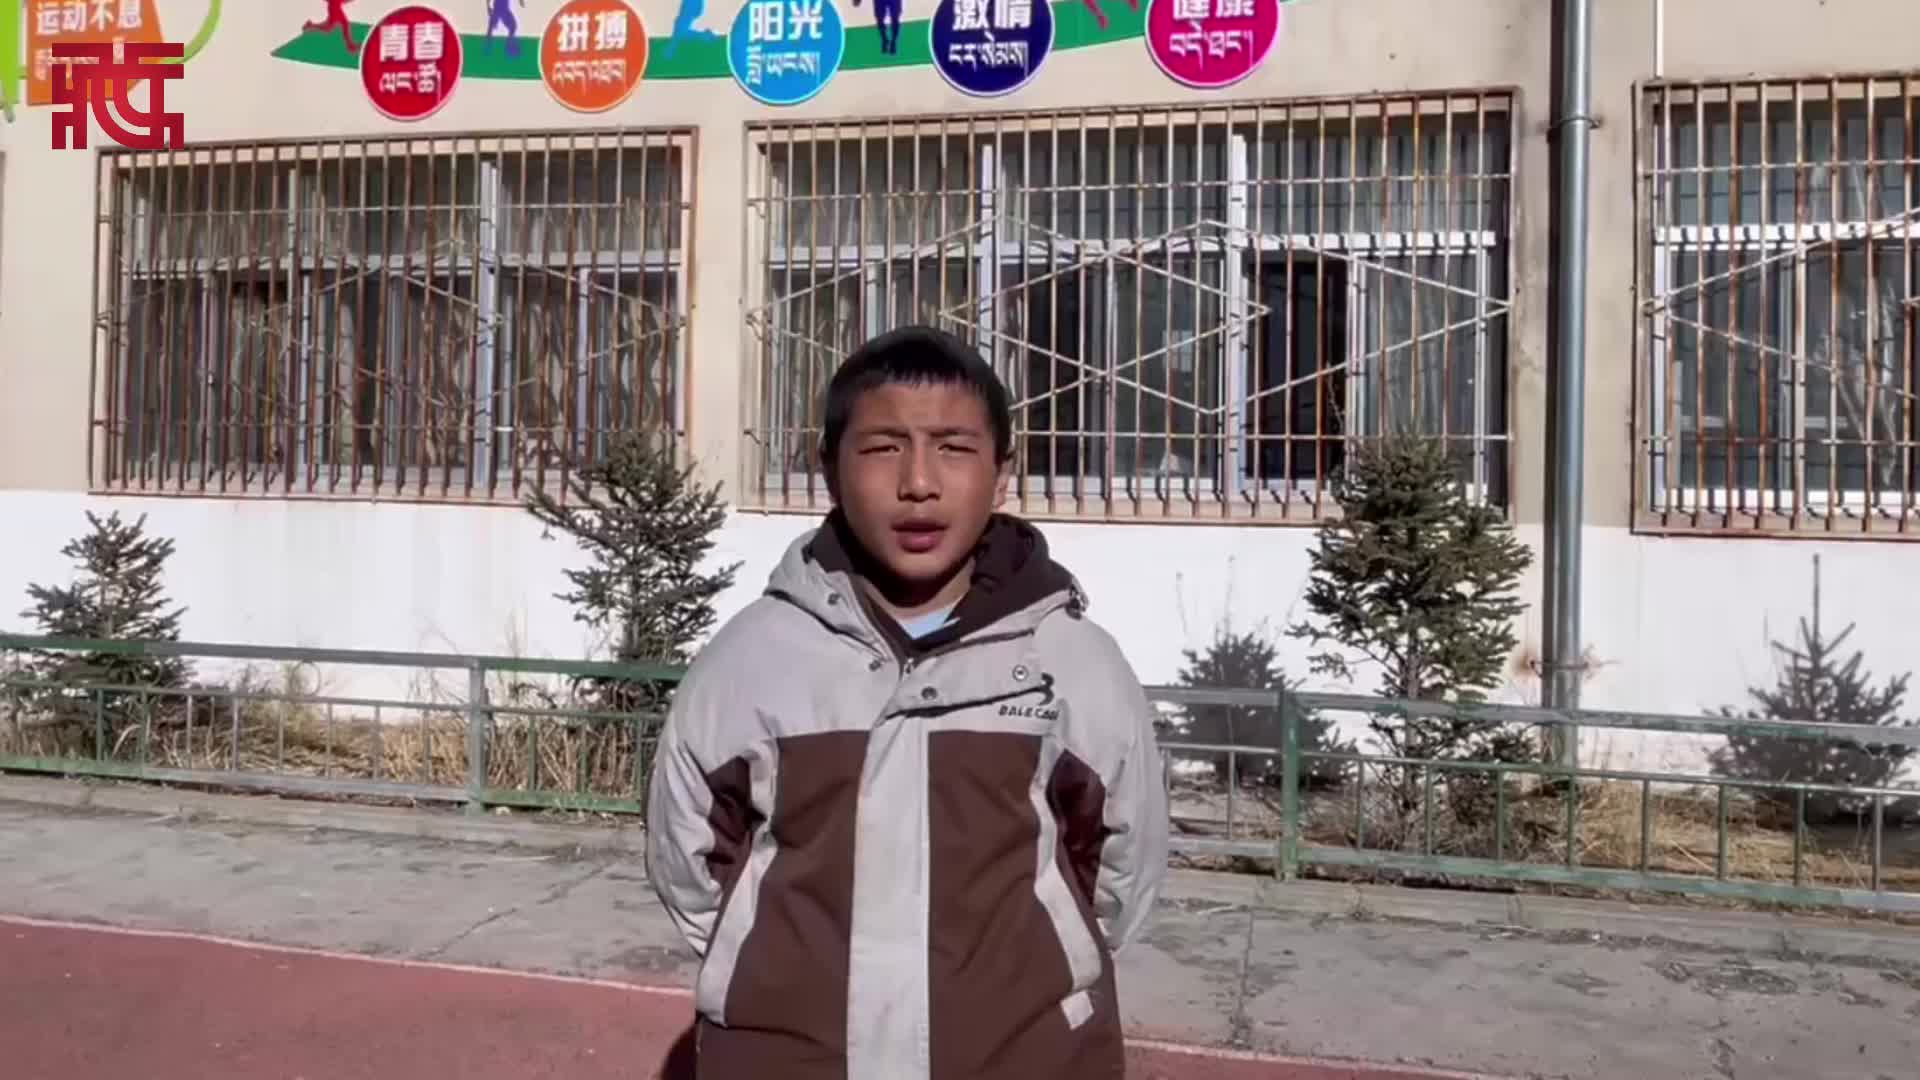 【龙行龘龘福来啦】西藏小学生送新年祝福 祝大家新春快乐 学业有成